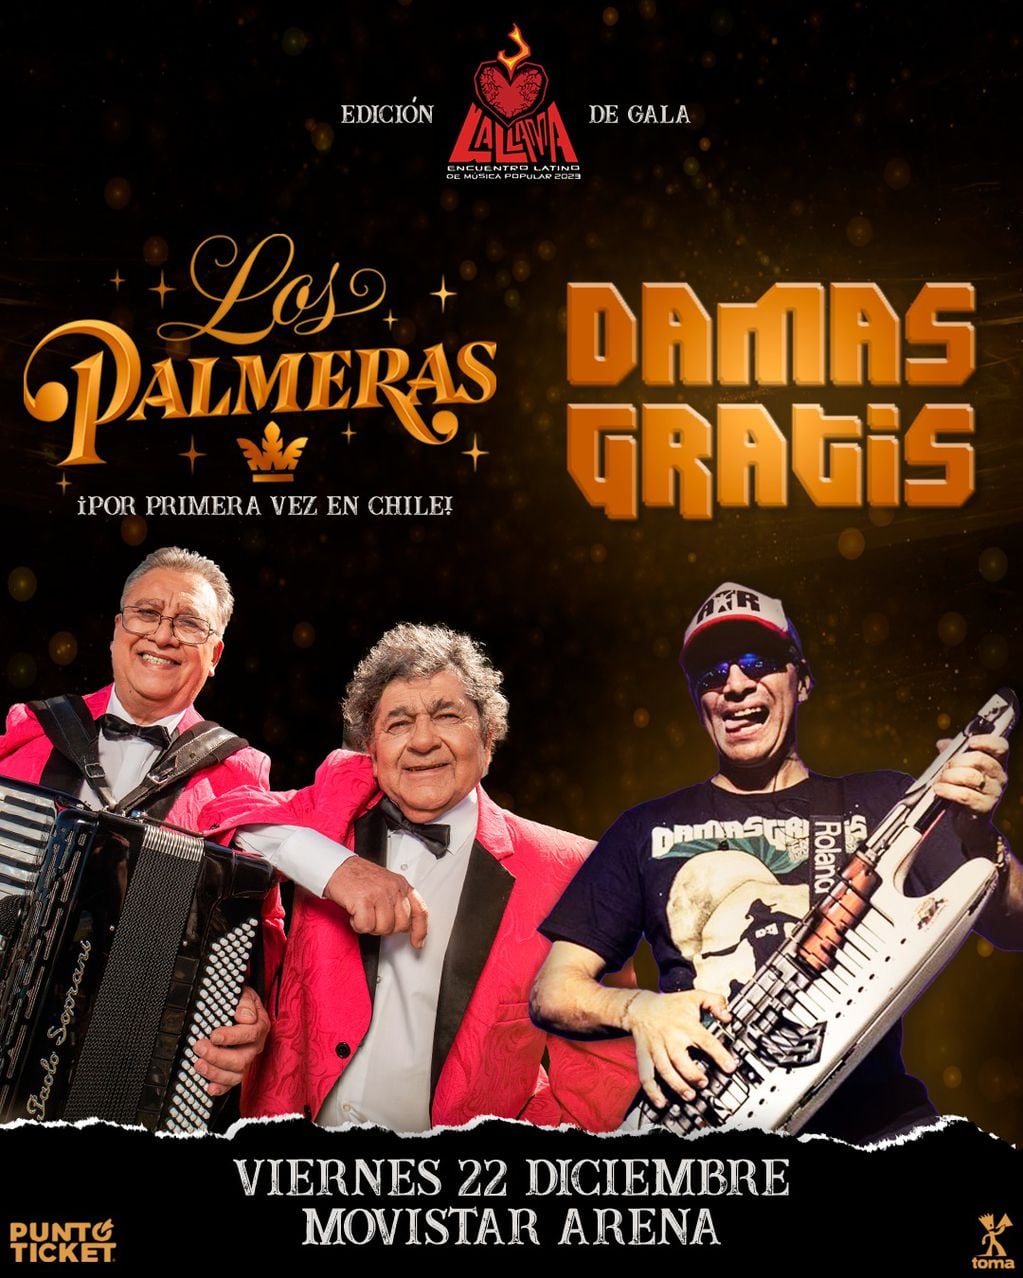 La Llama “de gala” anuncia los primeros confirmados de show en Movistar Arena:  Los Palmeras y Damas Gratis